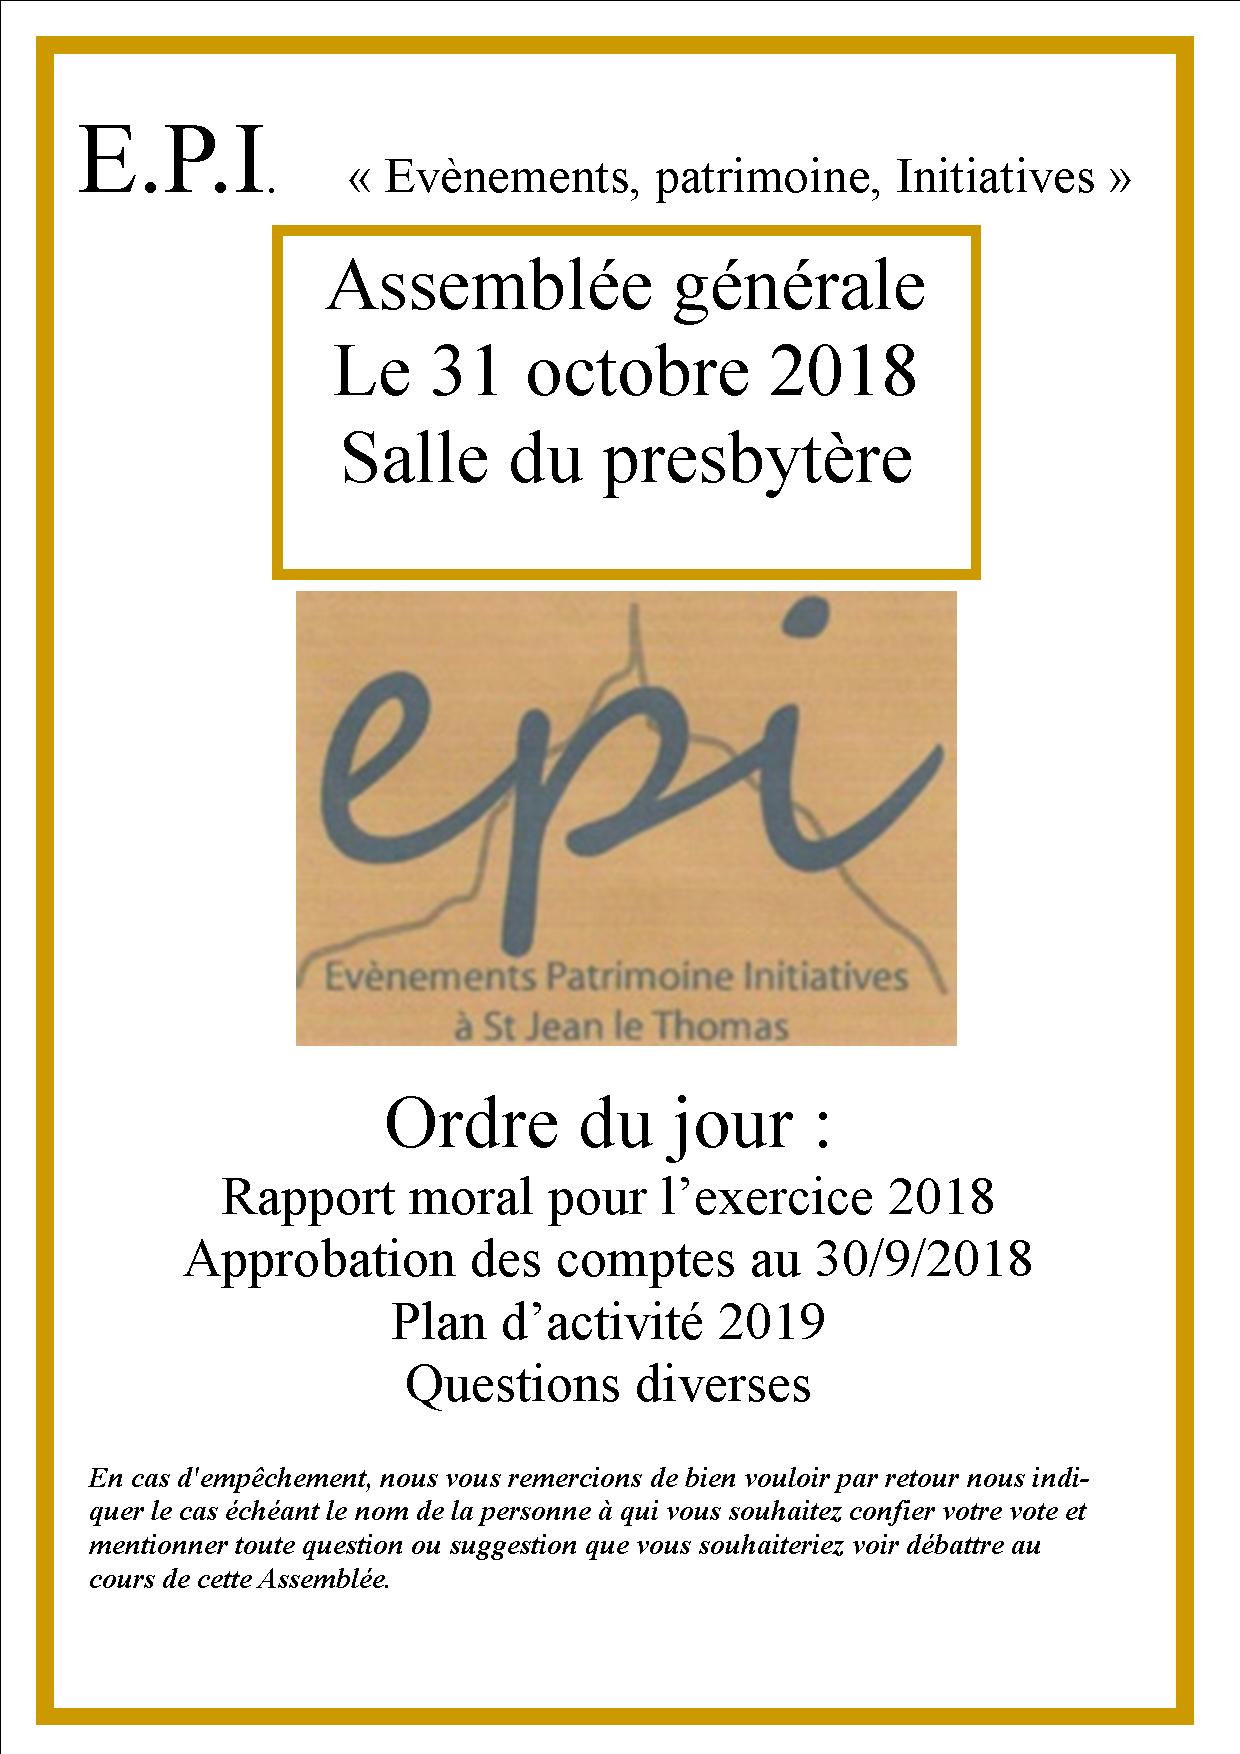 Le 31/10/2018, Assemblée Générale de E.P.I.